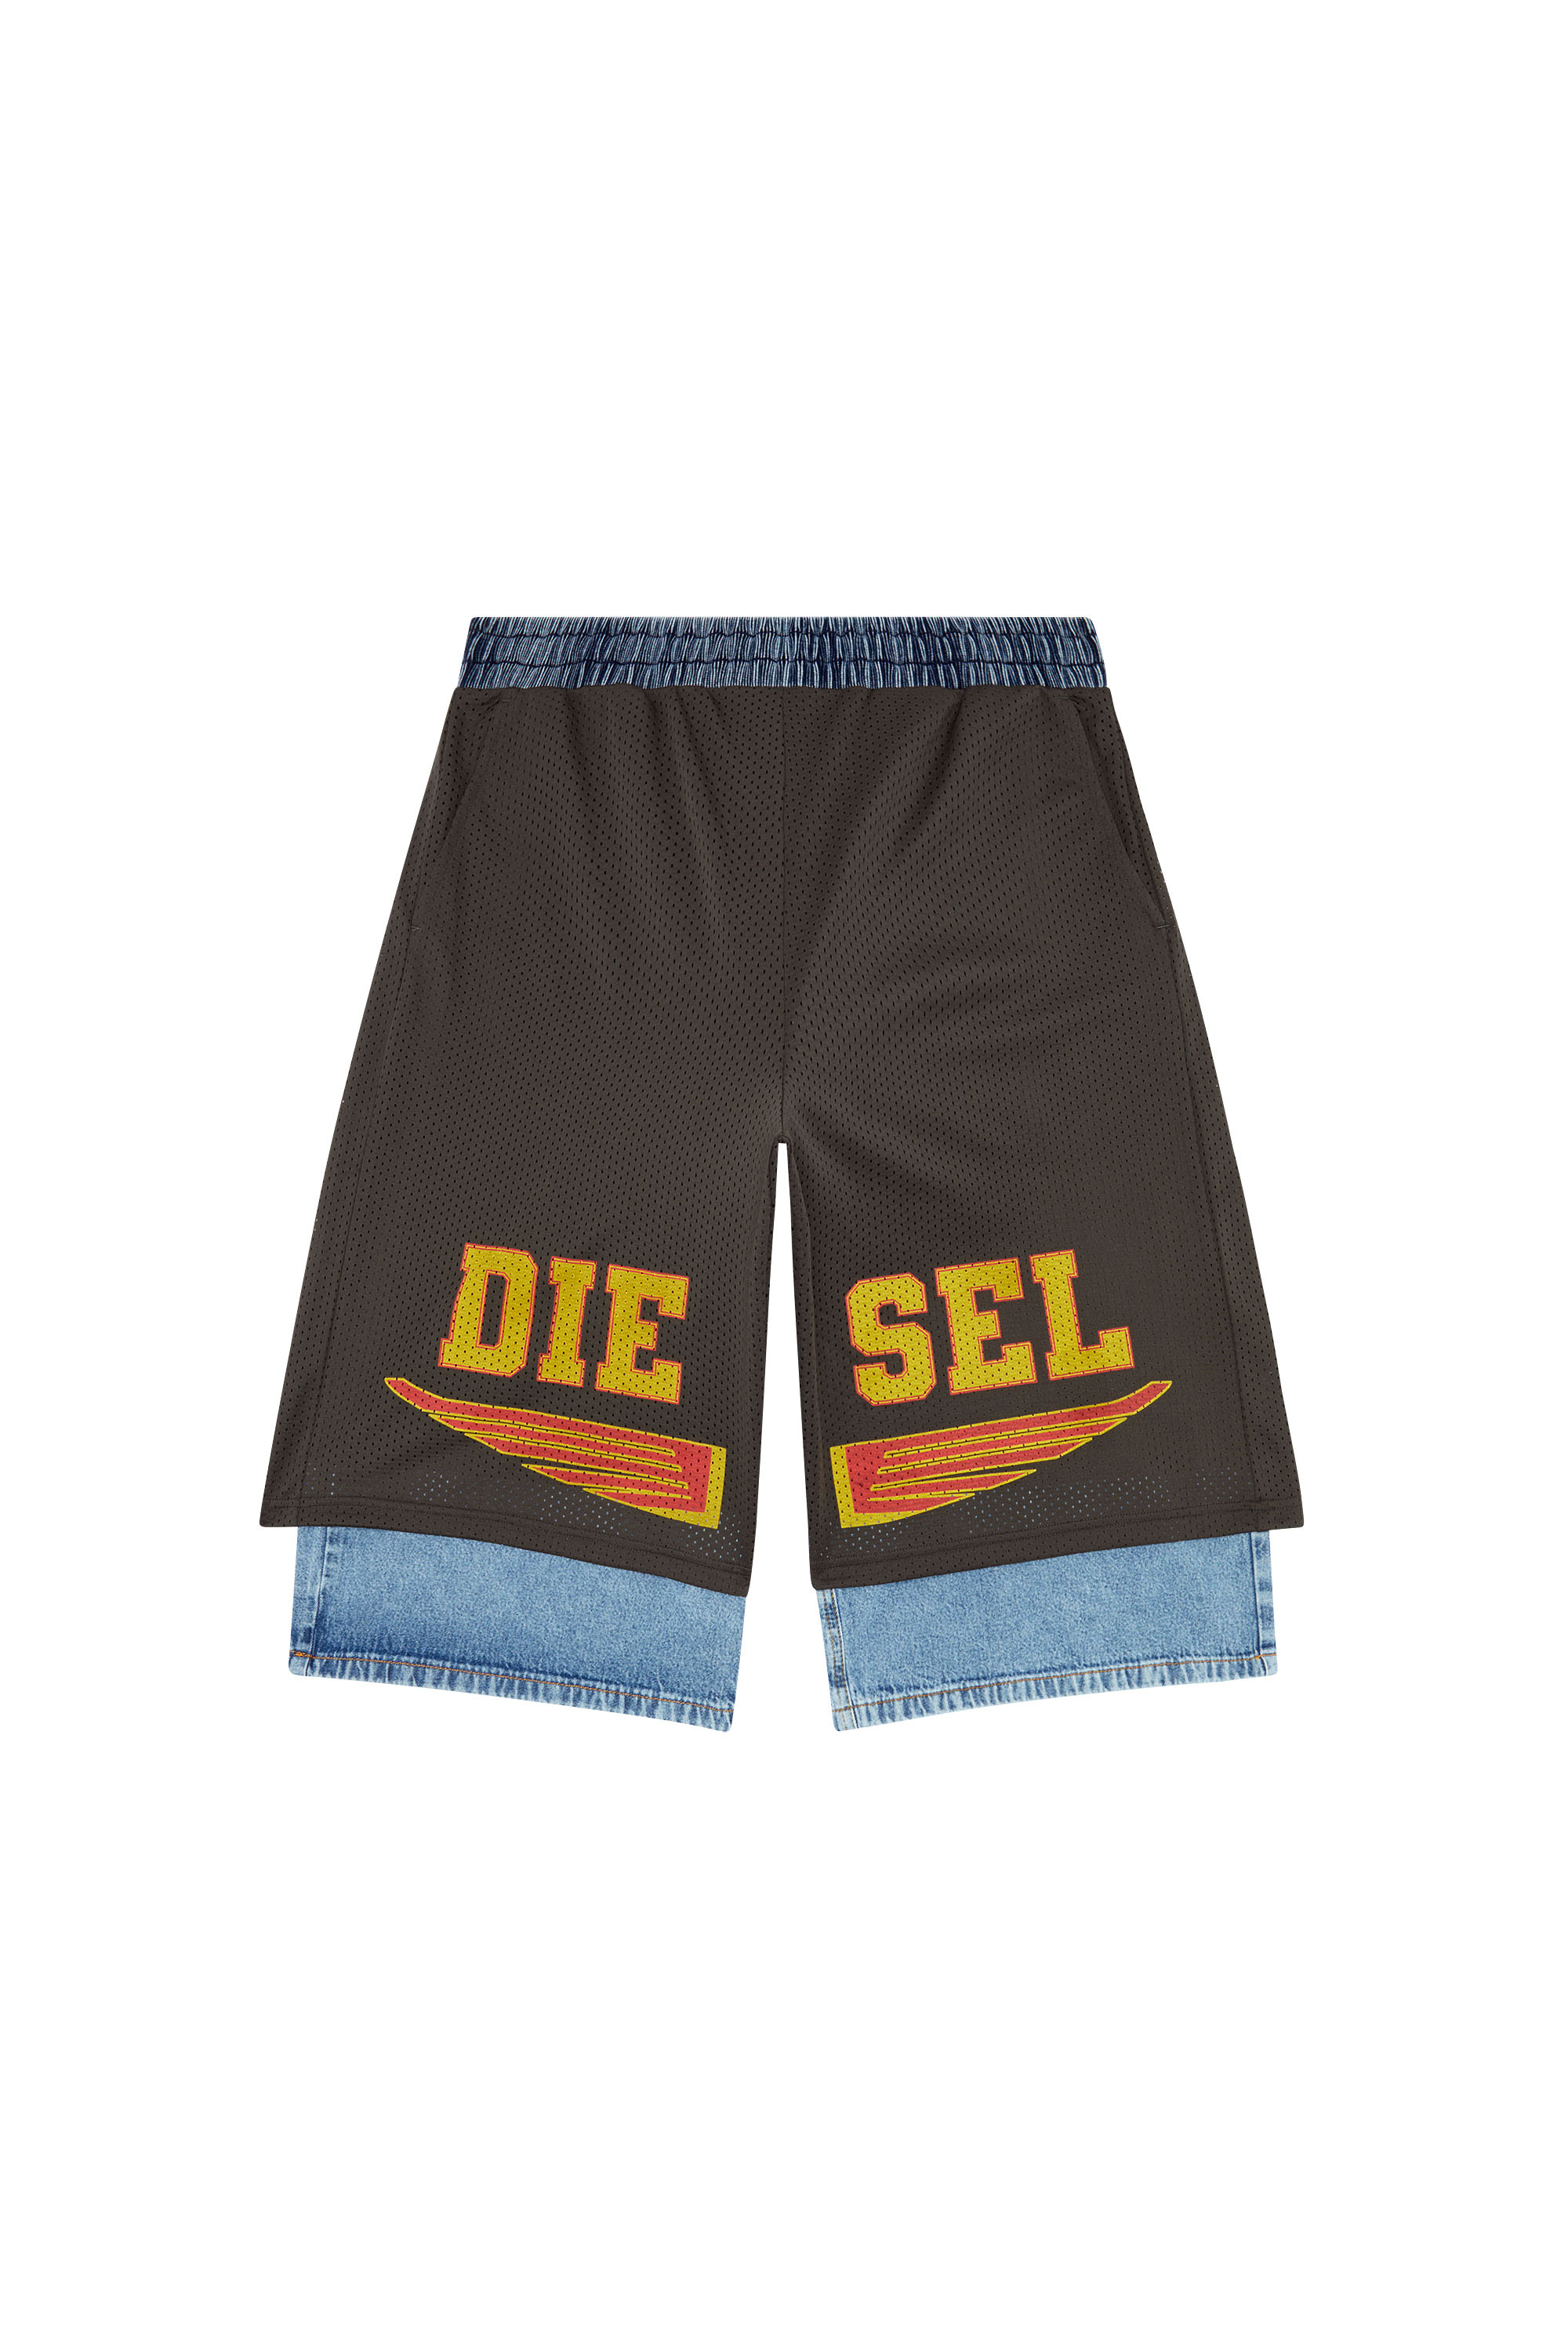 Diesel - P-ECKY, Herren Weite Shorts aus Jersey, Mesh und Denim in Grau - Image 3